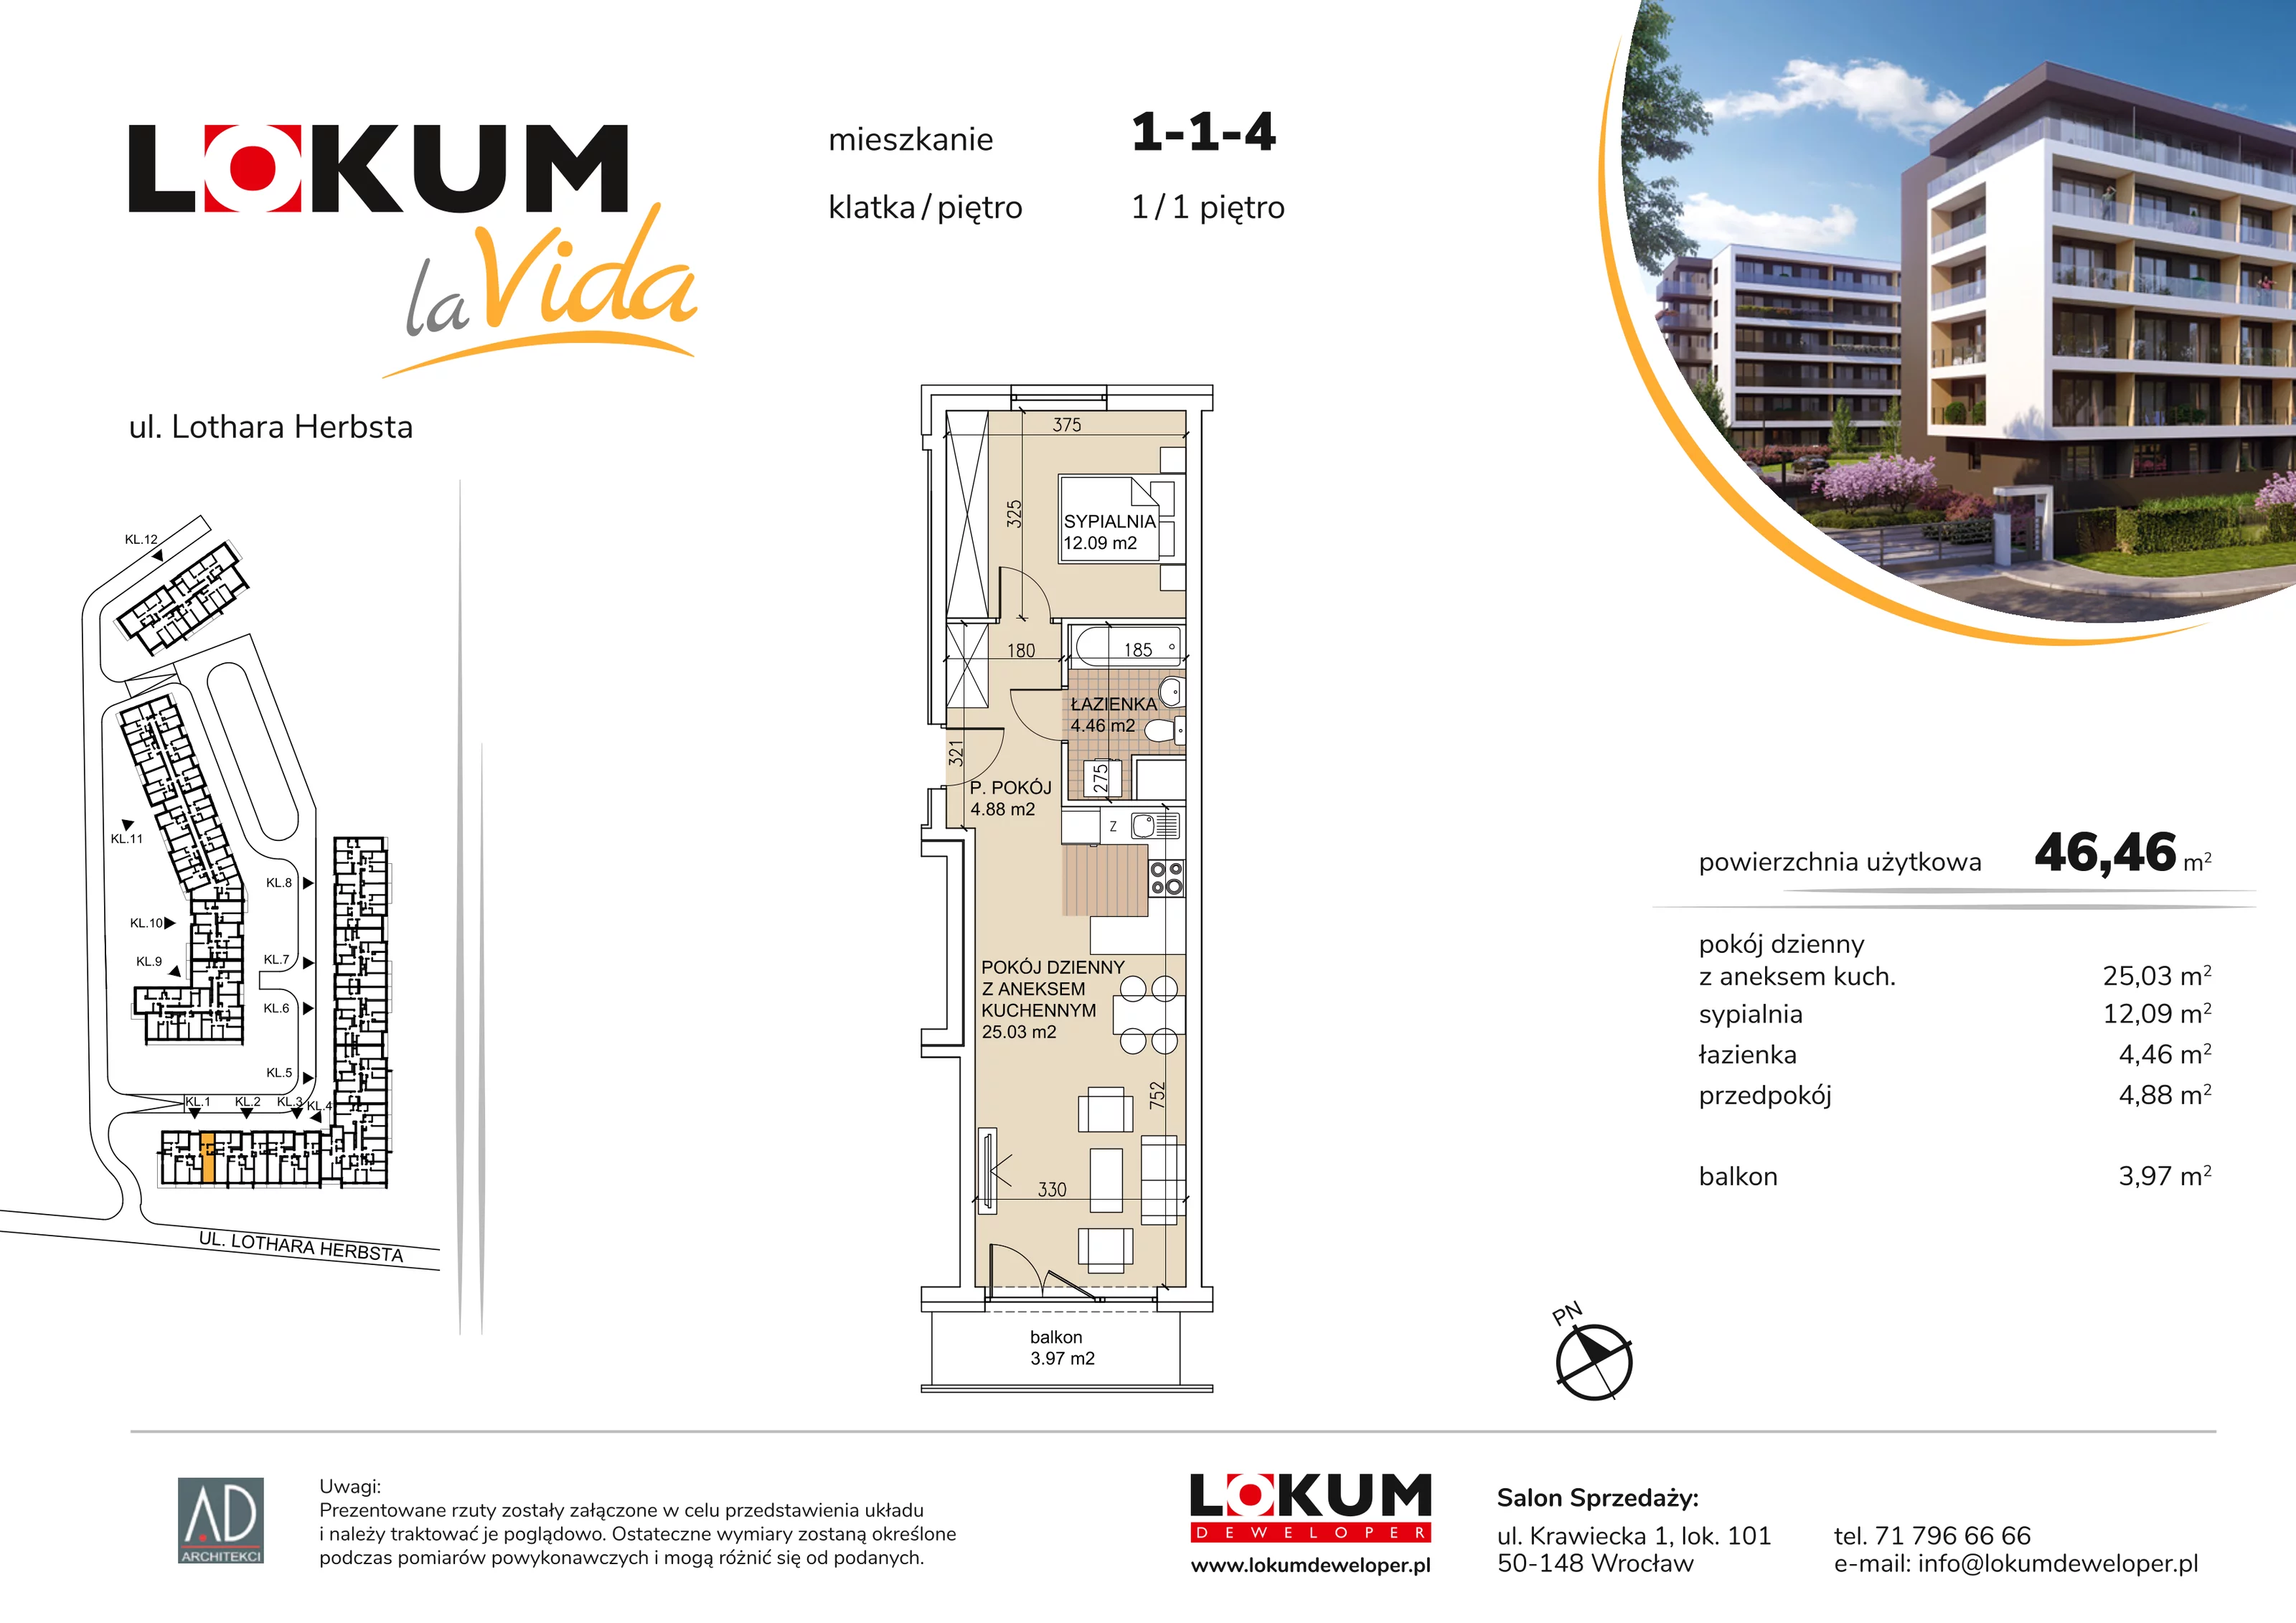 Mieszkanie 46,46 m², piętro 1, oferta nr 1-1-4, Lokum la Vida, Wrocław, Sołtysowice, ul. Lothara Herbsta